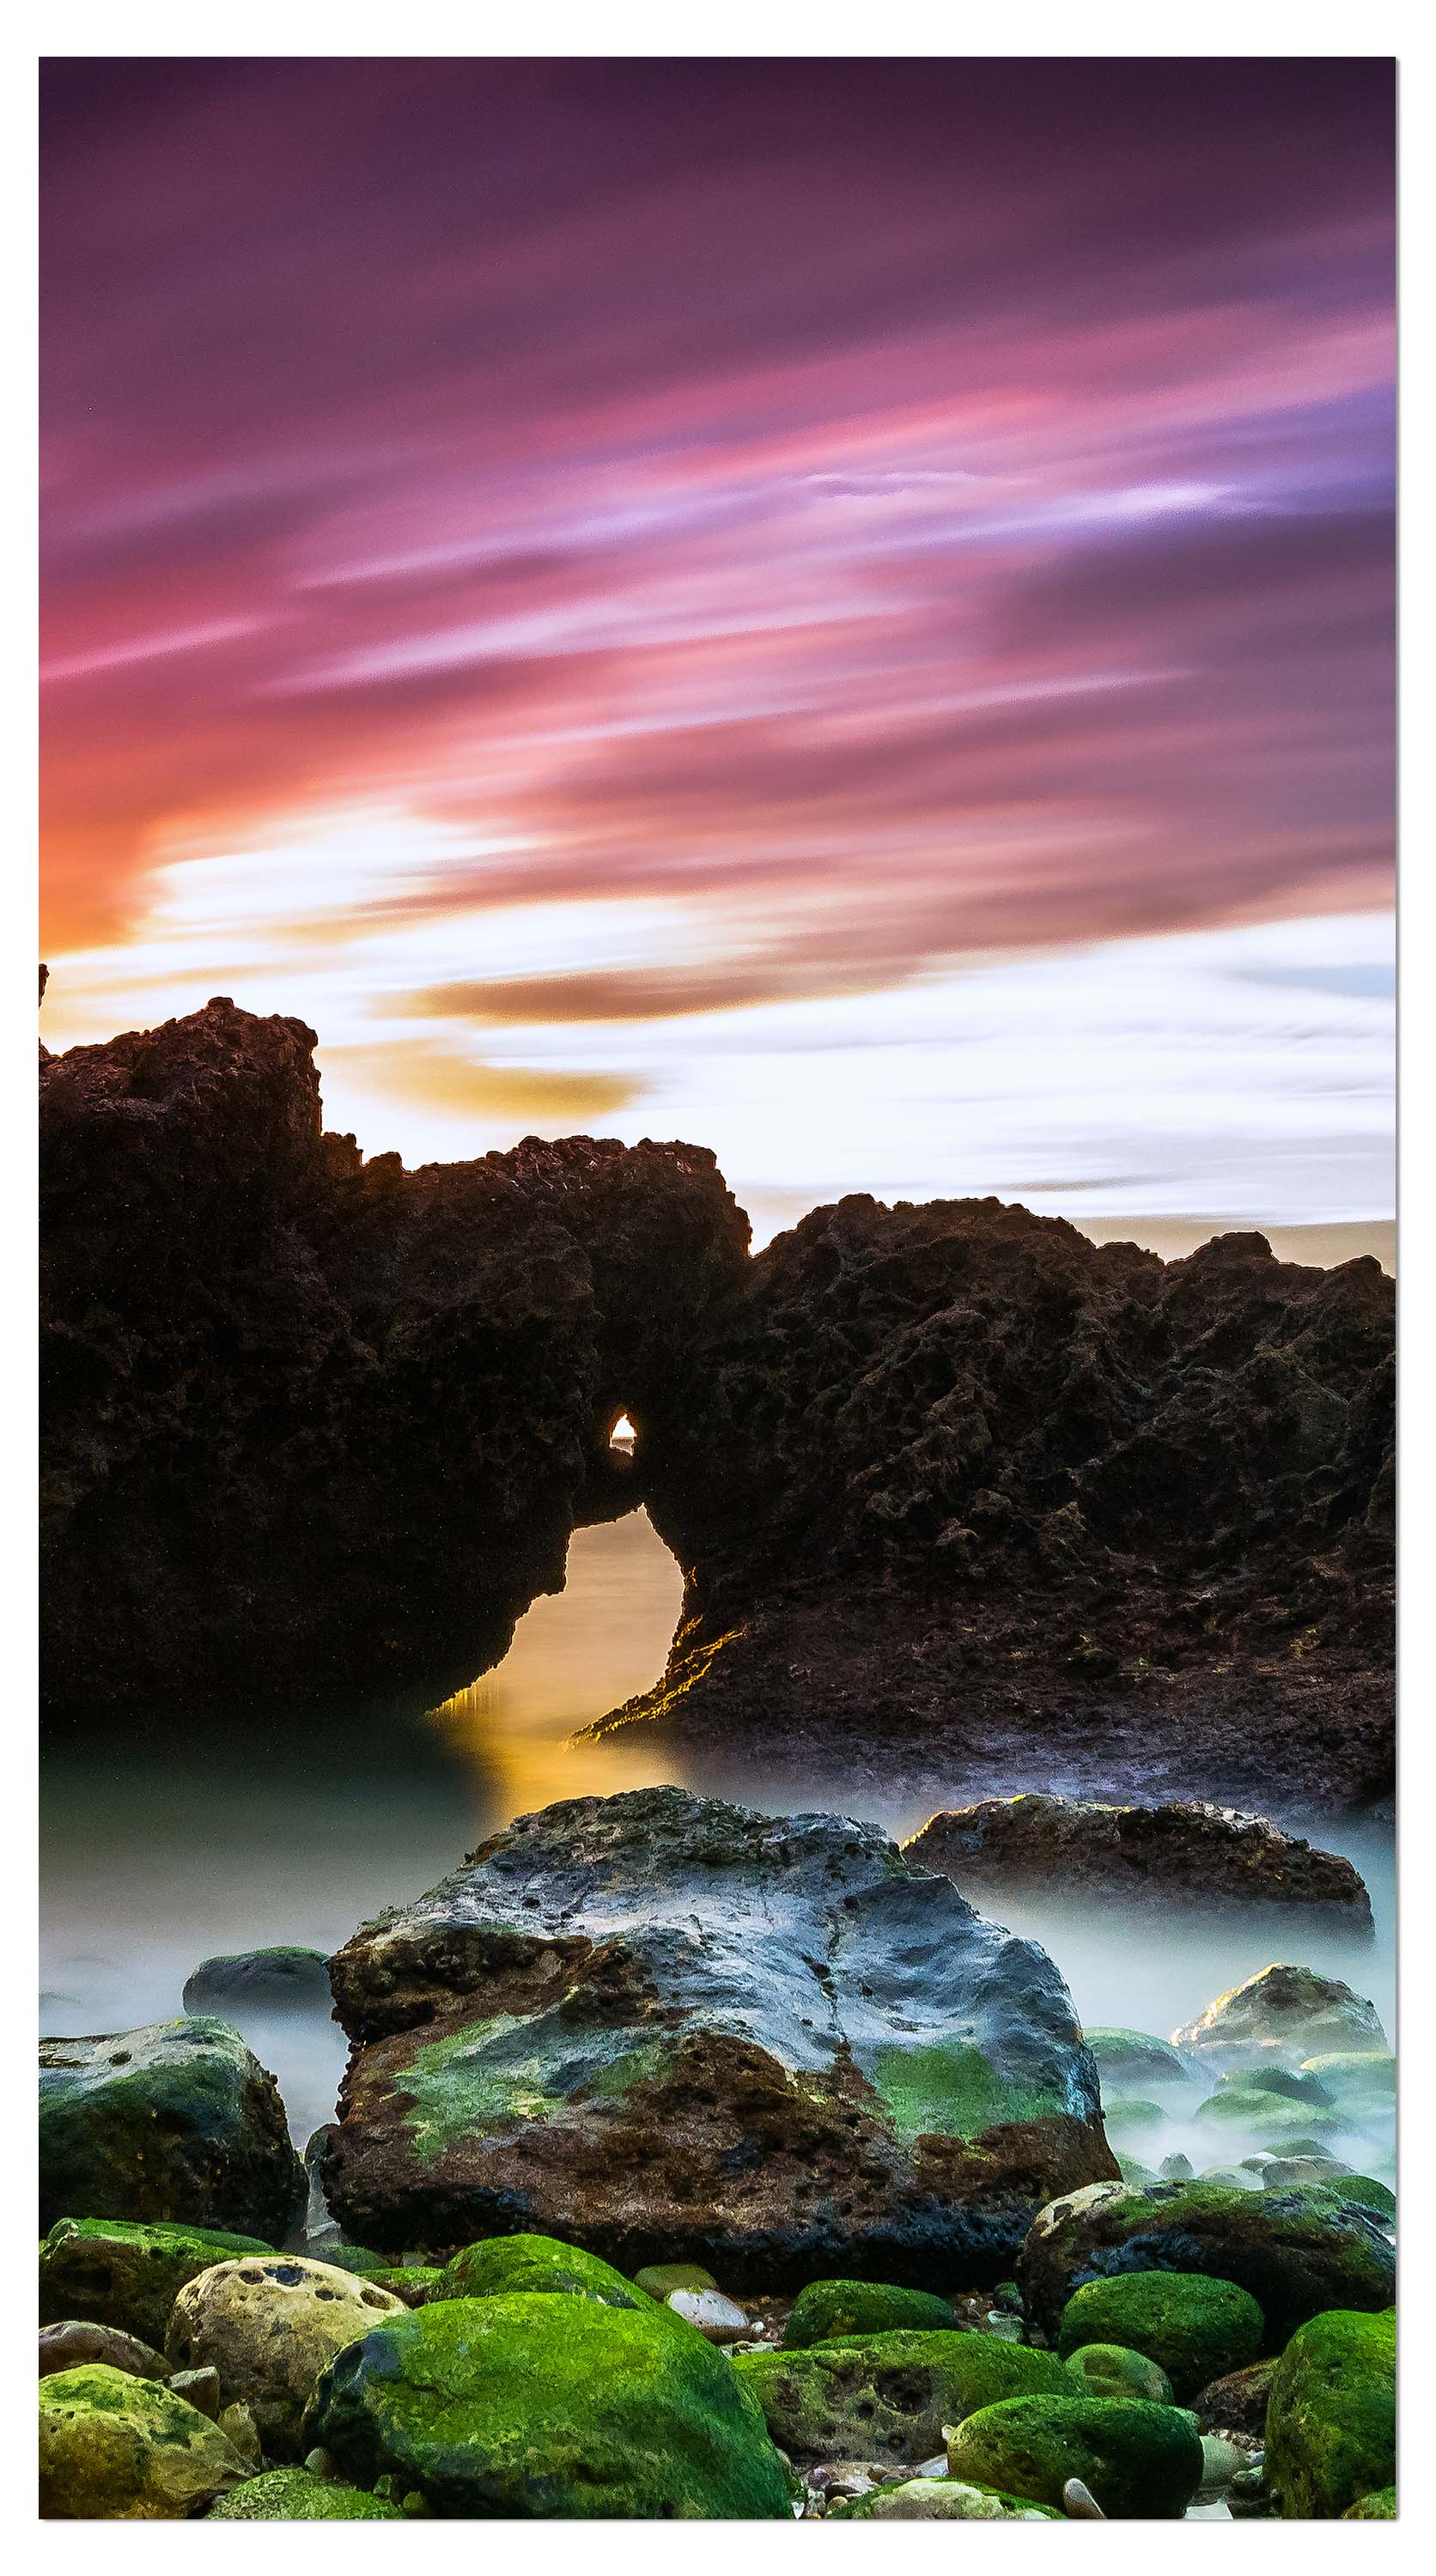 Garderobe Strand bei Sonnenuntergang mit Felsen M0902 entdecken - Bild 4